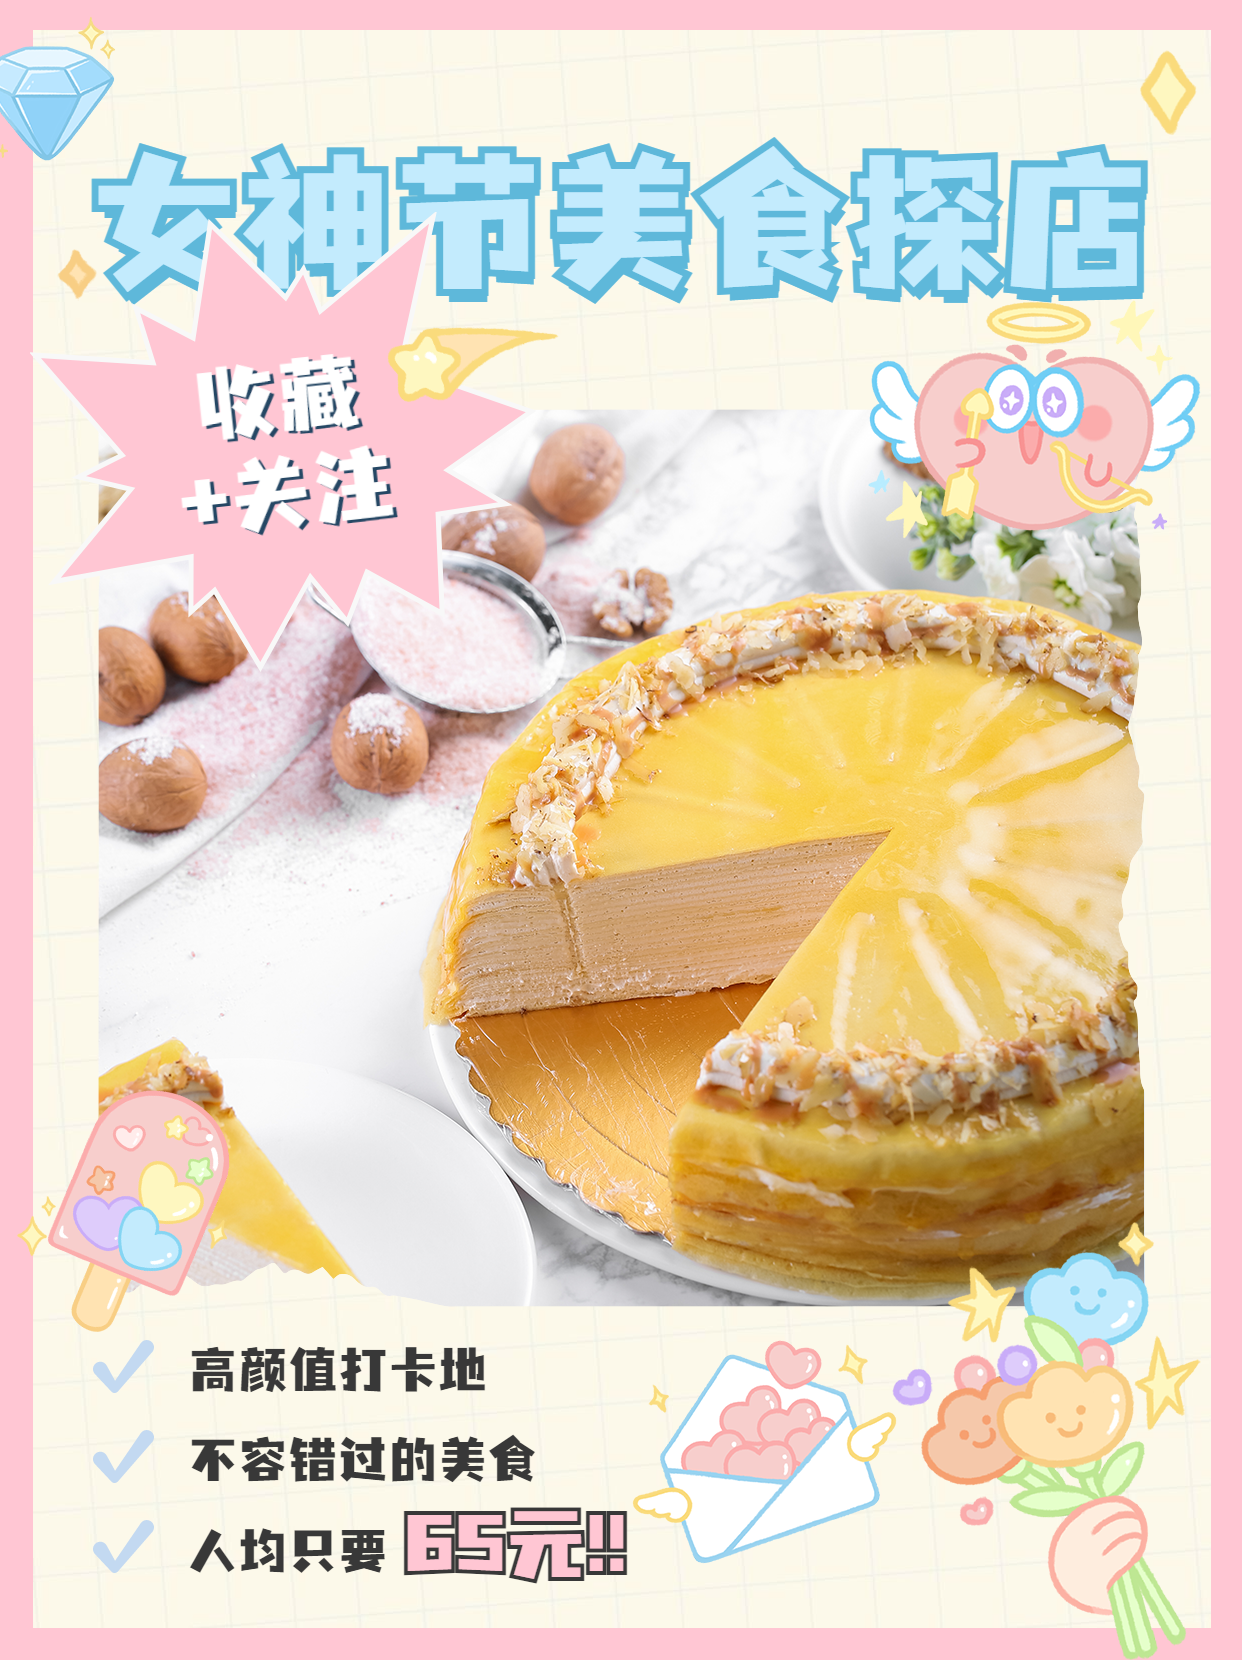 女神节烘焙甜品产品展示实景海报预览效果